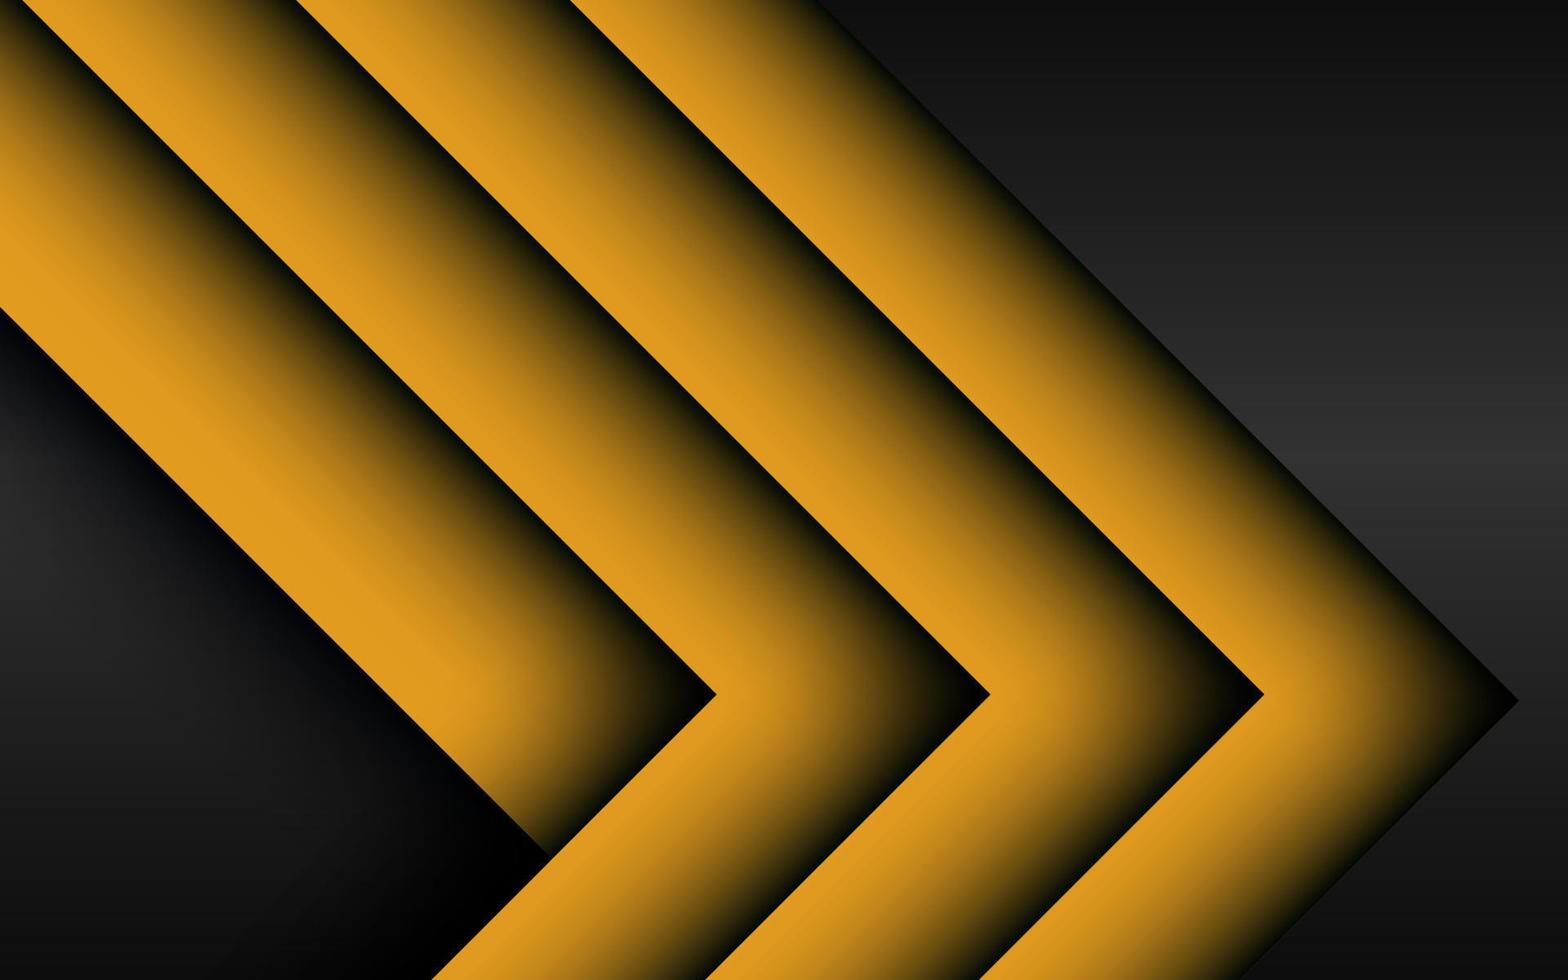 abstracte gele pijlrichting op donkergrijs met lege ruimteontwerp moderne futuristische technische achtergrond. eps10 vector